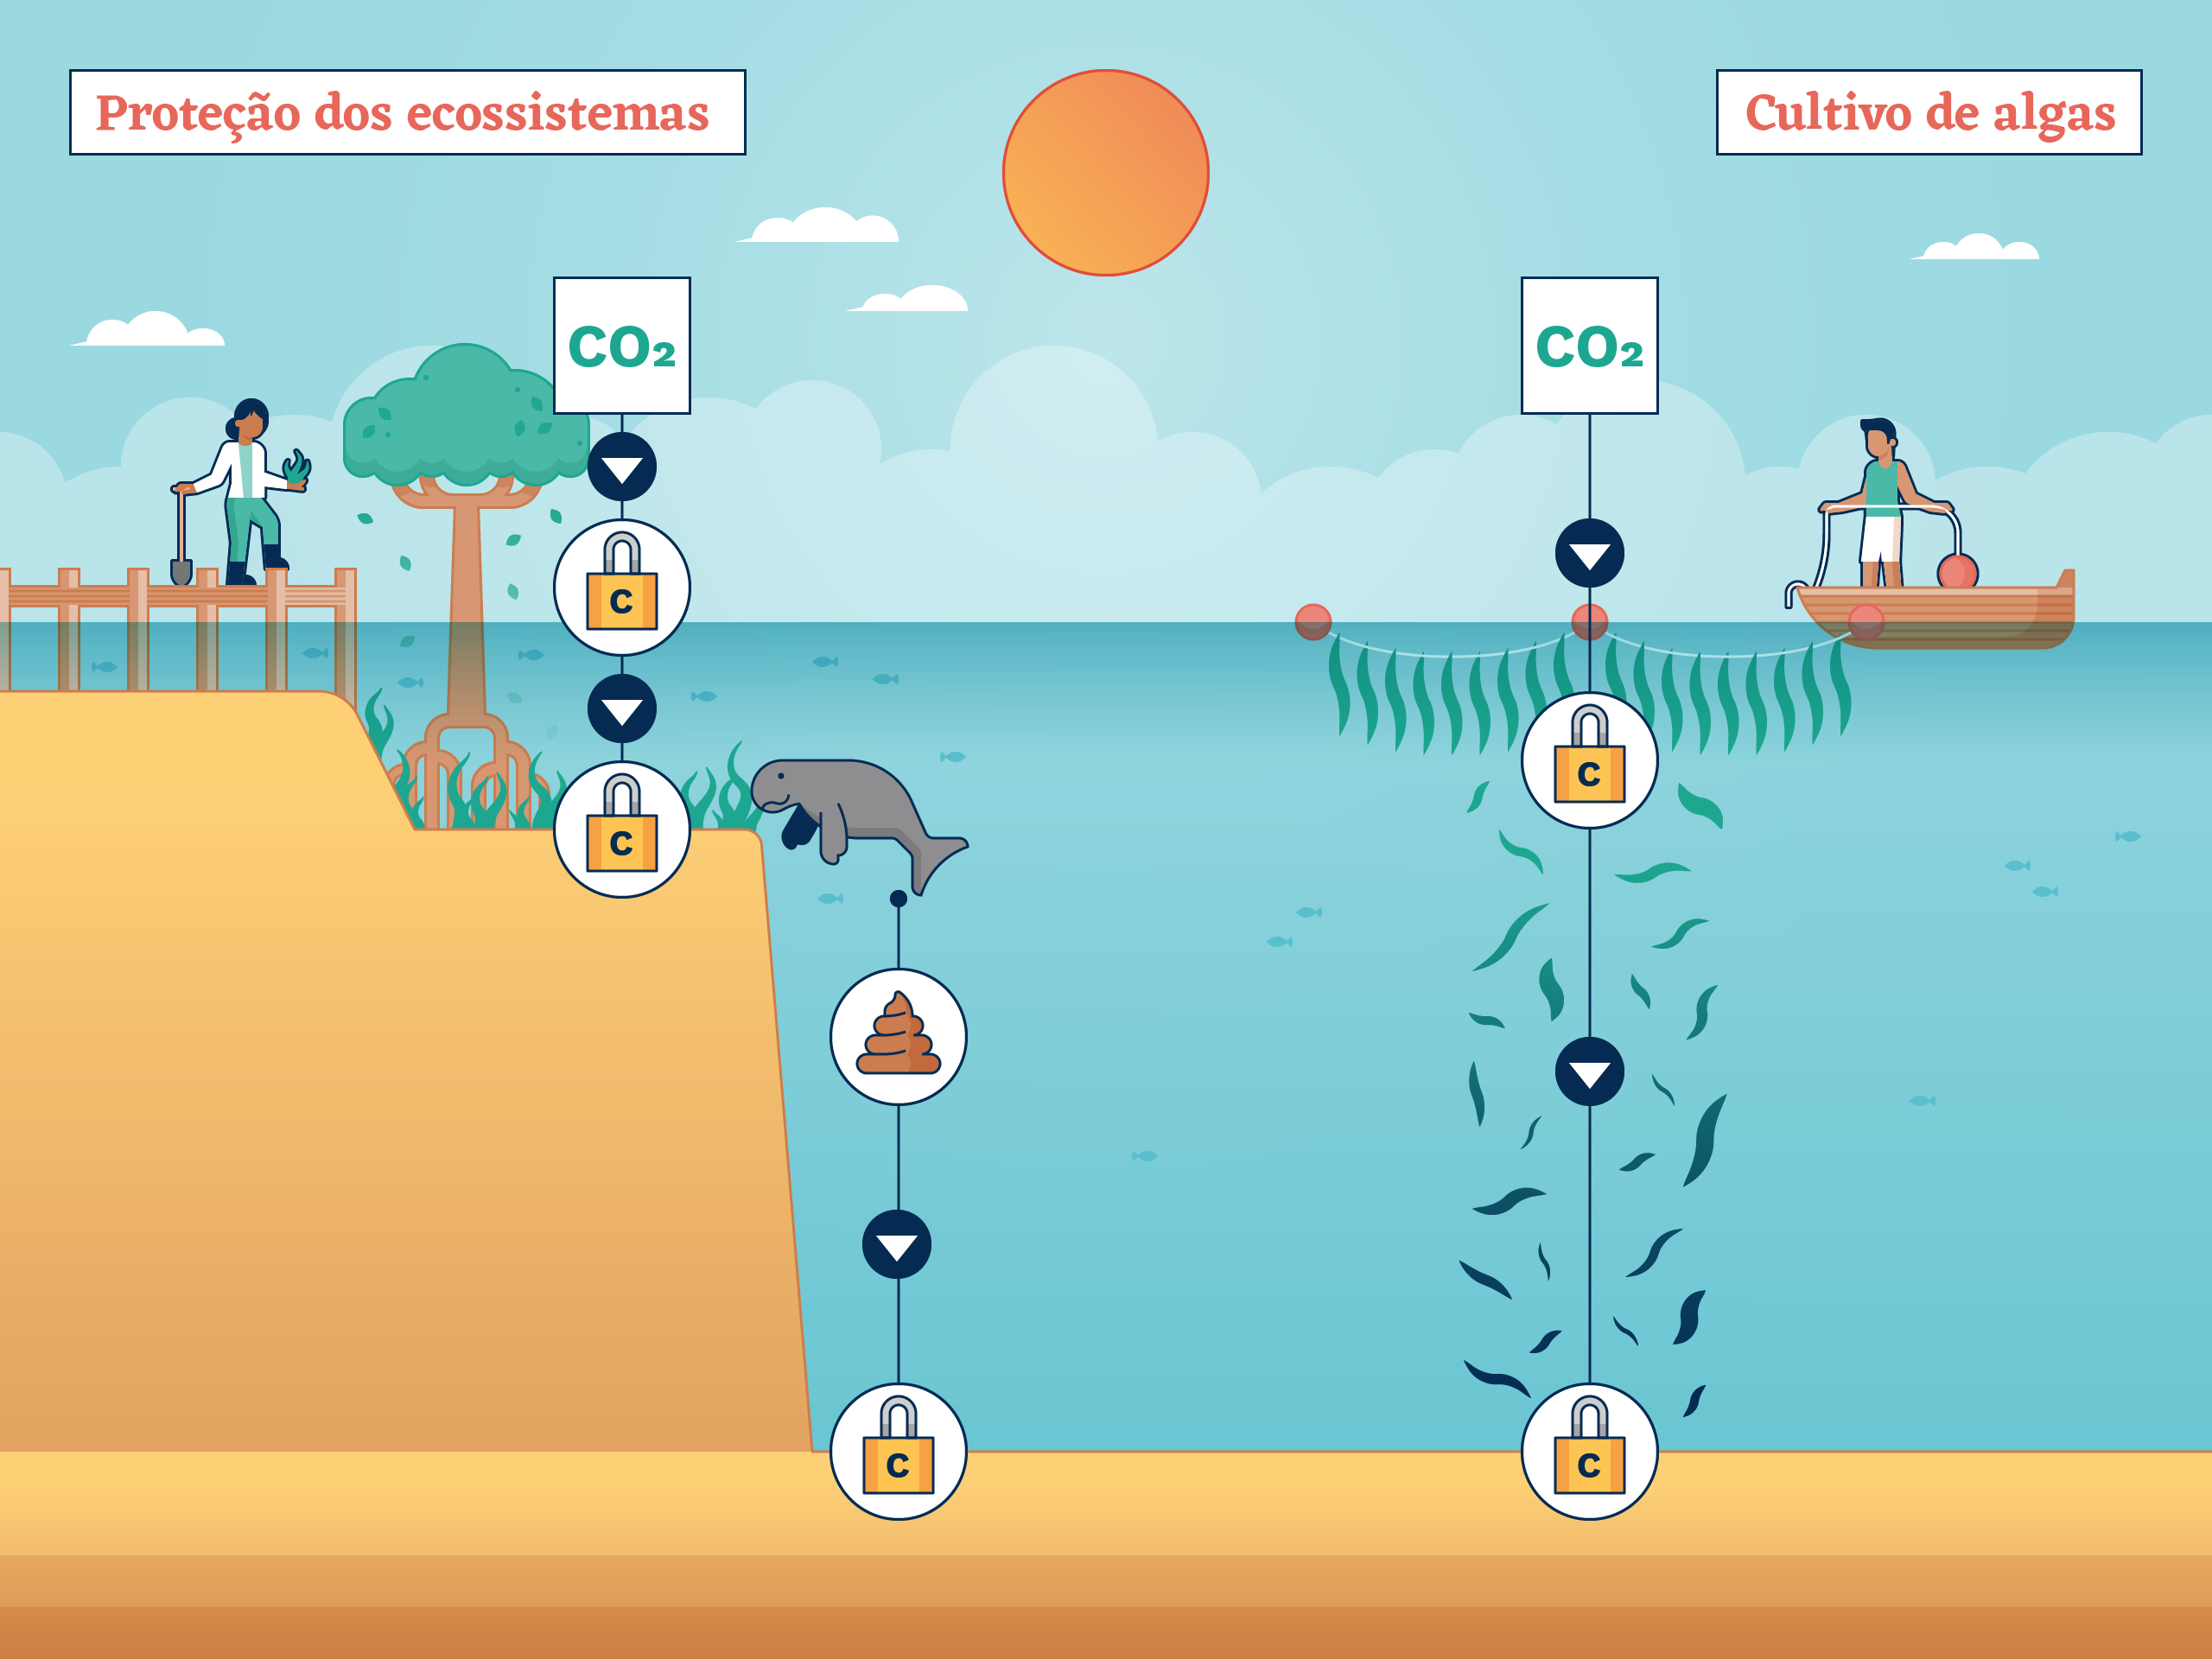 Ecossistemas costeiros como manguezais, pântanos e pradarias marinhas armazenam enormes quantidades de carbono ao reunir sedimentos de matéria orgânica morta.